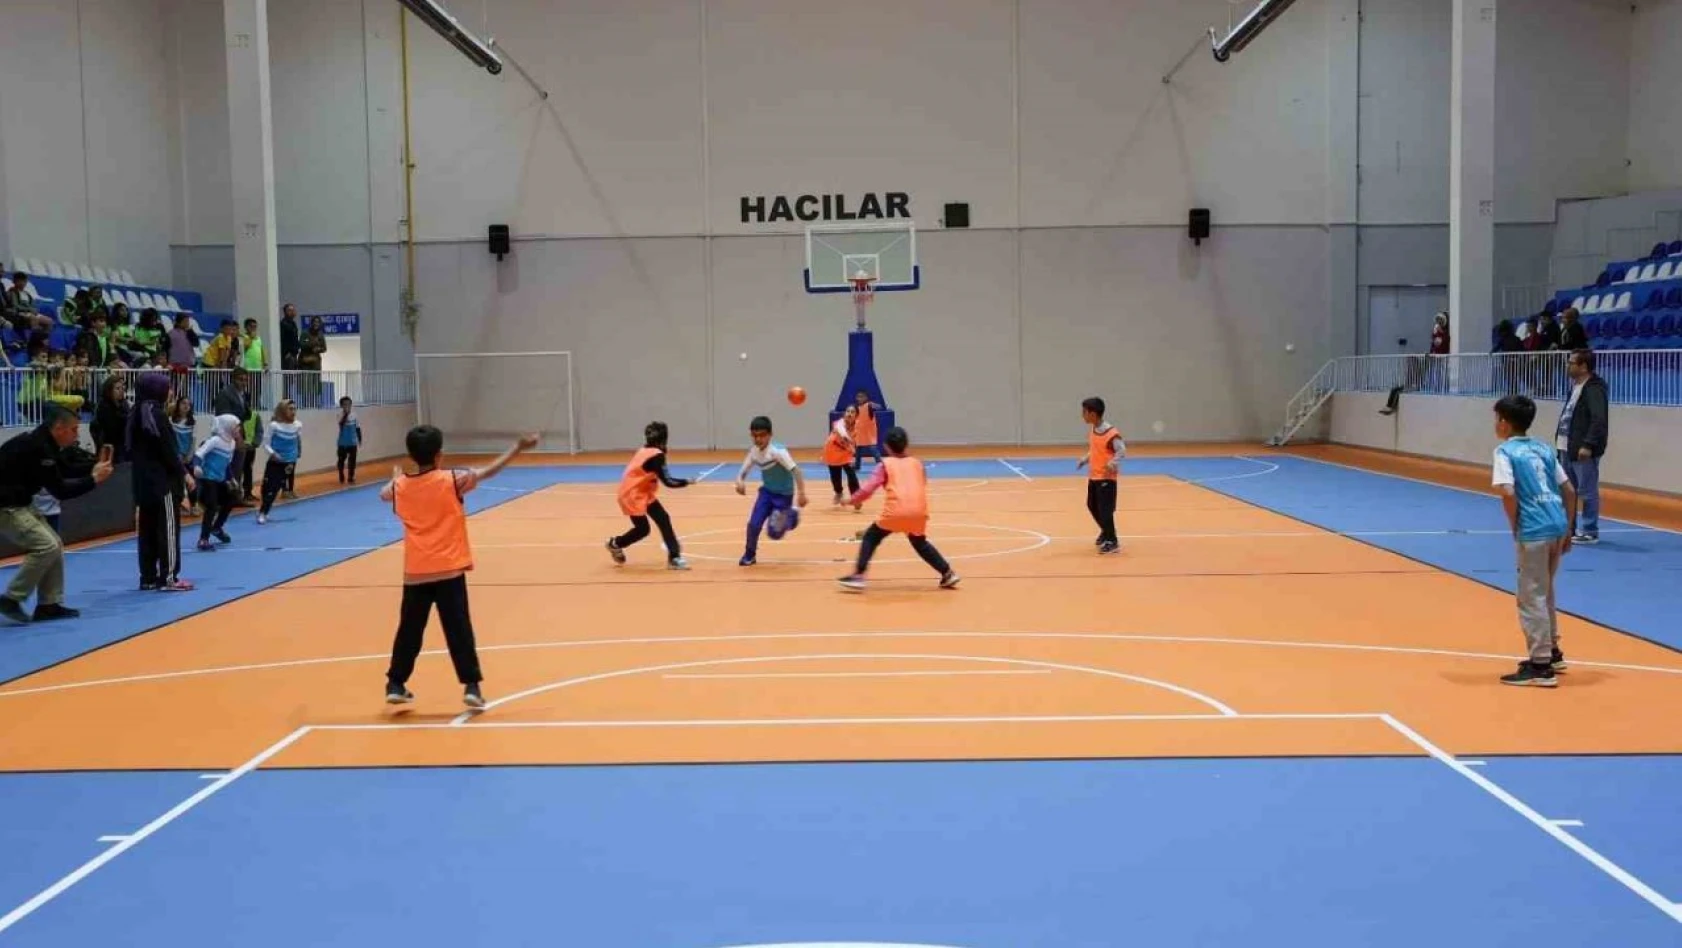 Hacılar Kapalı Spor Salonu'nda ilk etkinlik